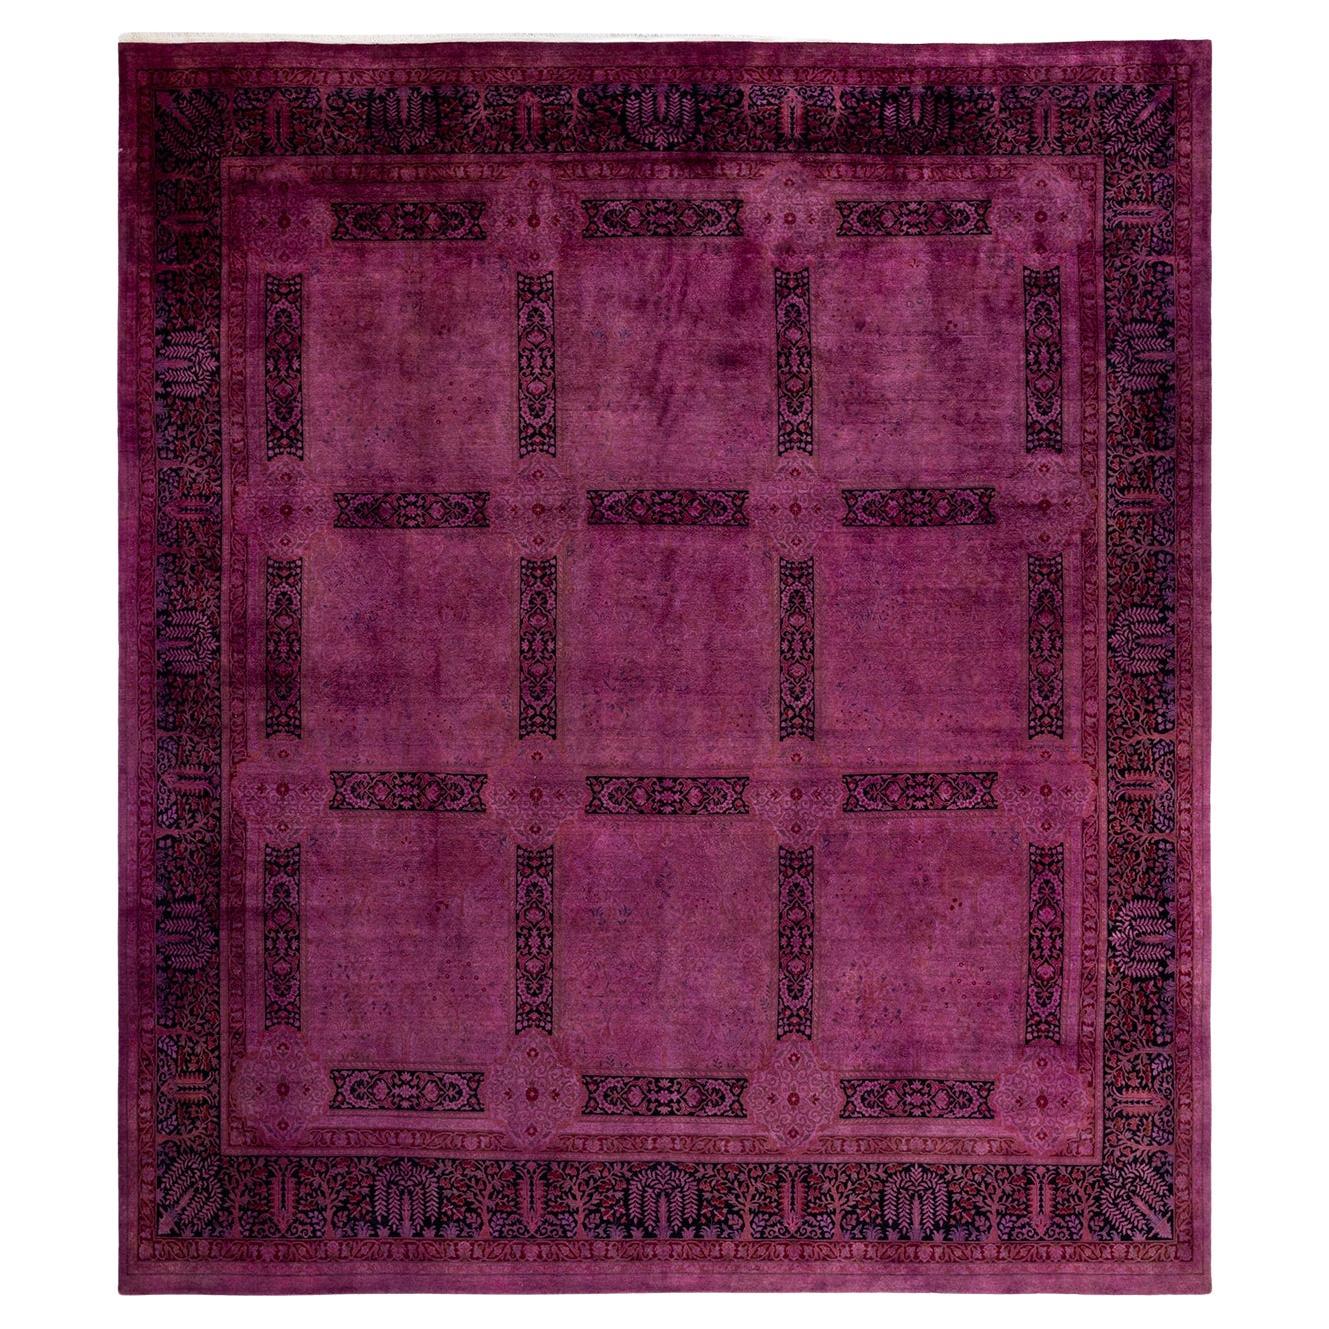 Overdyed Handgeknüpfter rosa Teppich aus Wolle